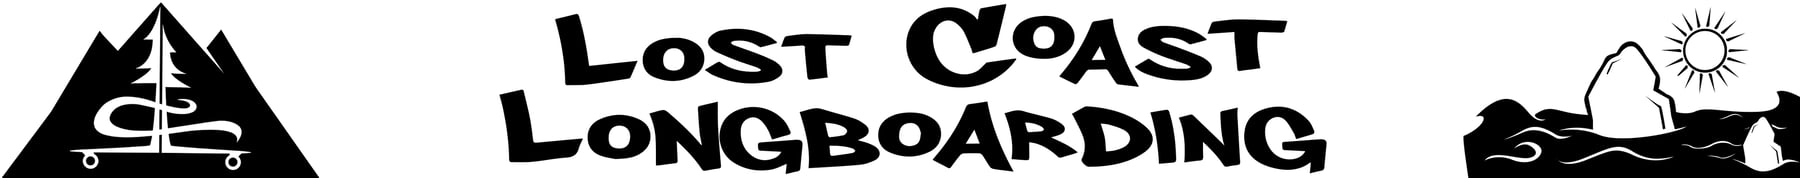 Lost Coast Longboarding